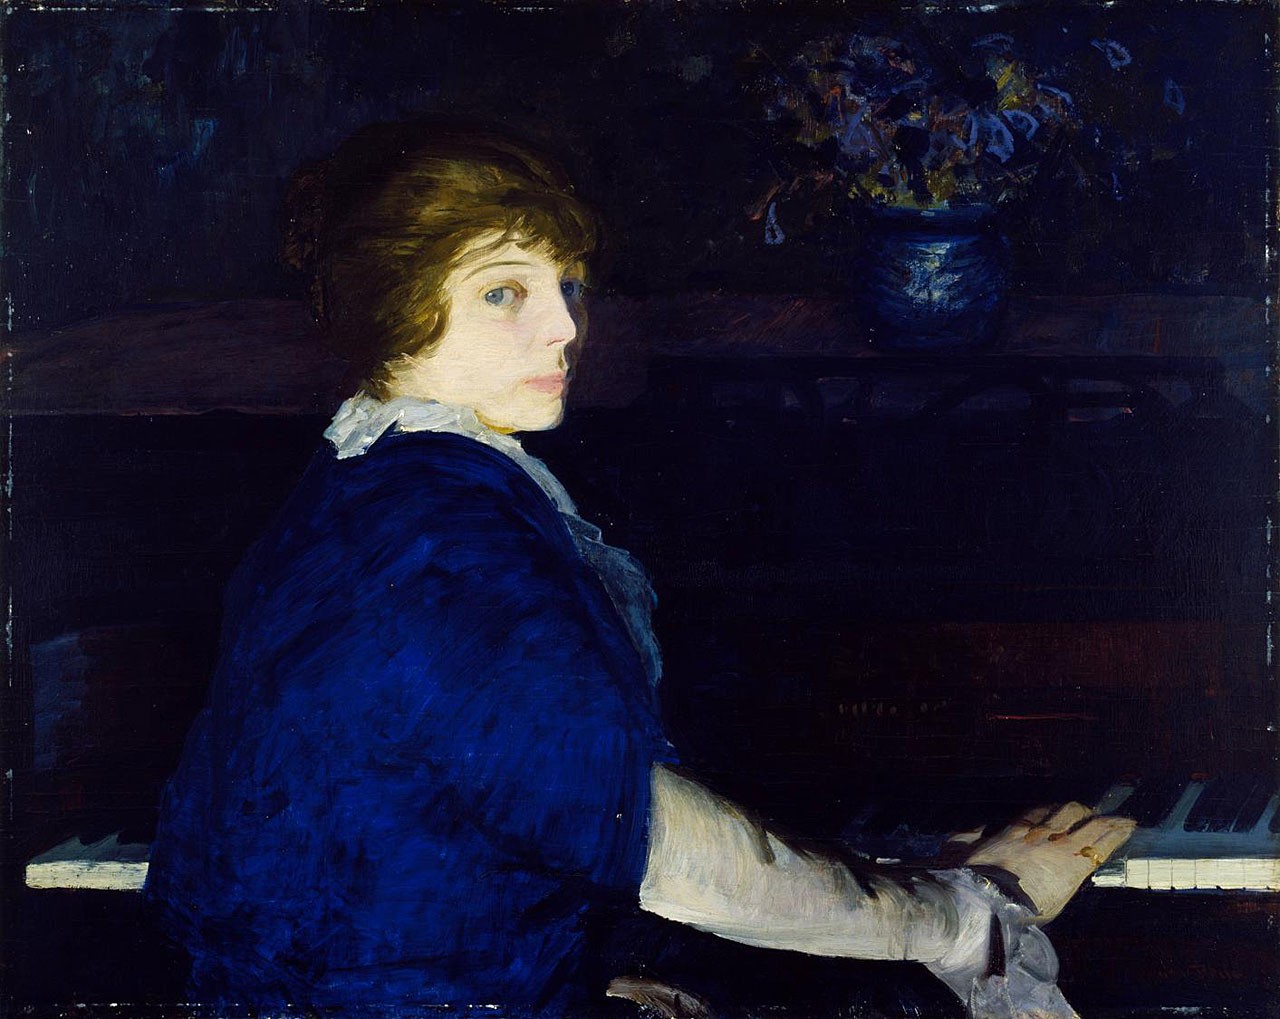 إيما على البيانو by George Bellows - 1914 - 73 x 94 cm 